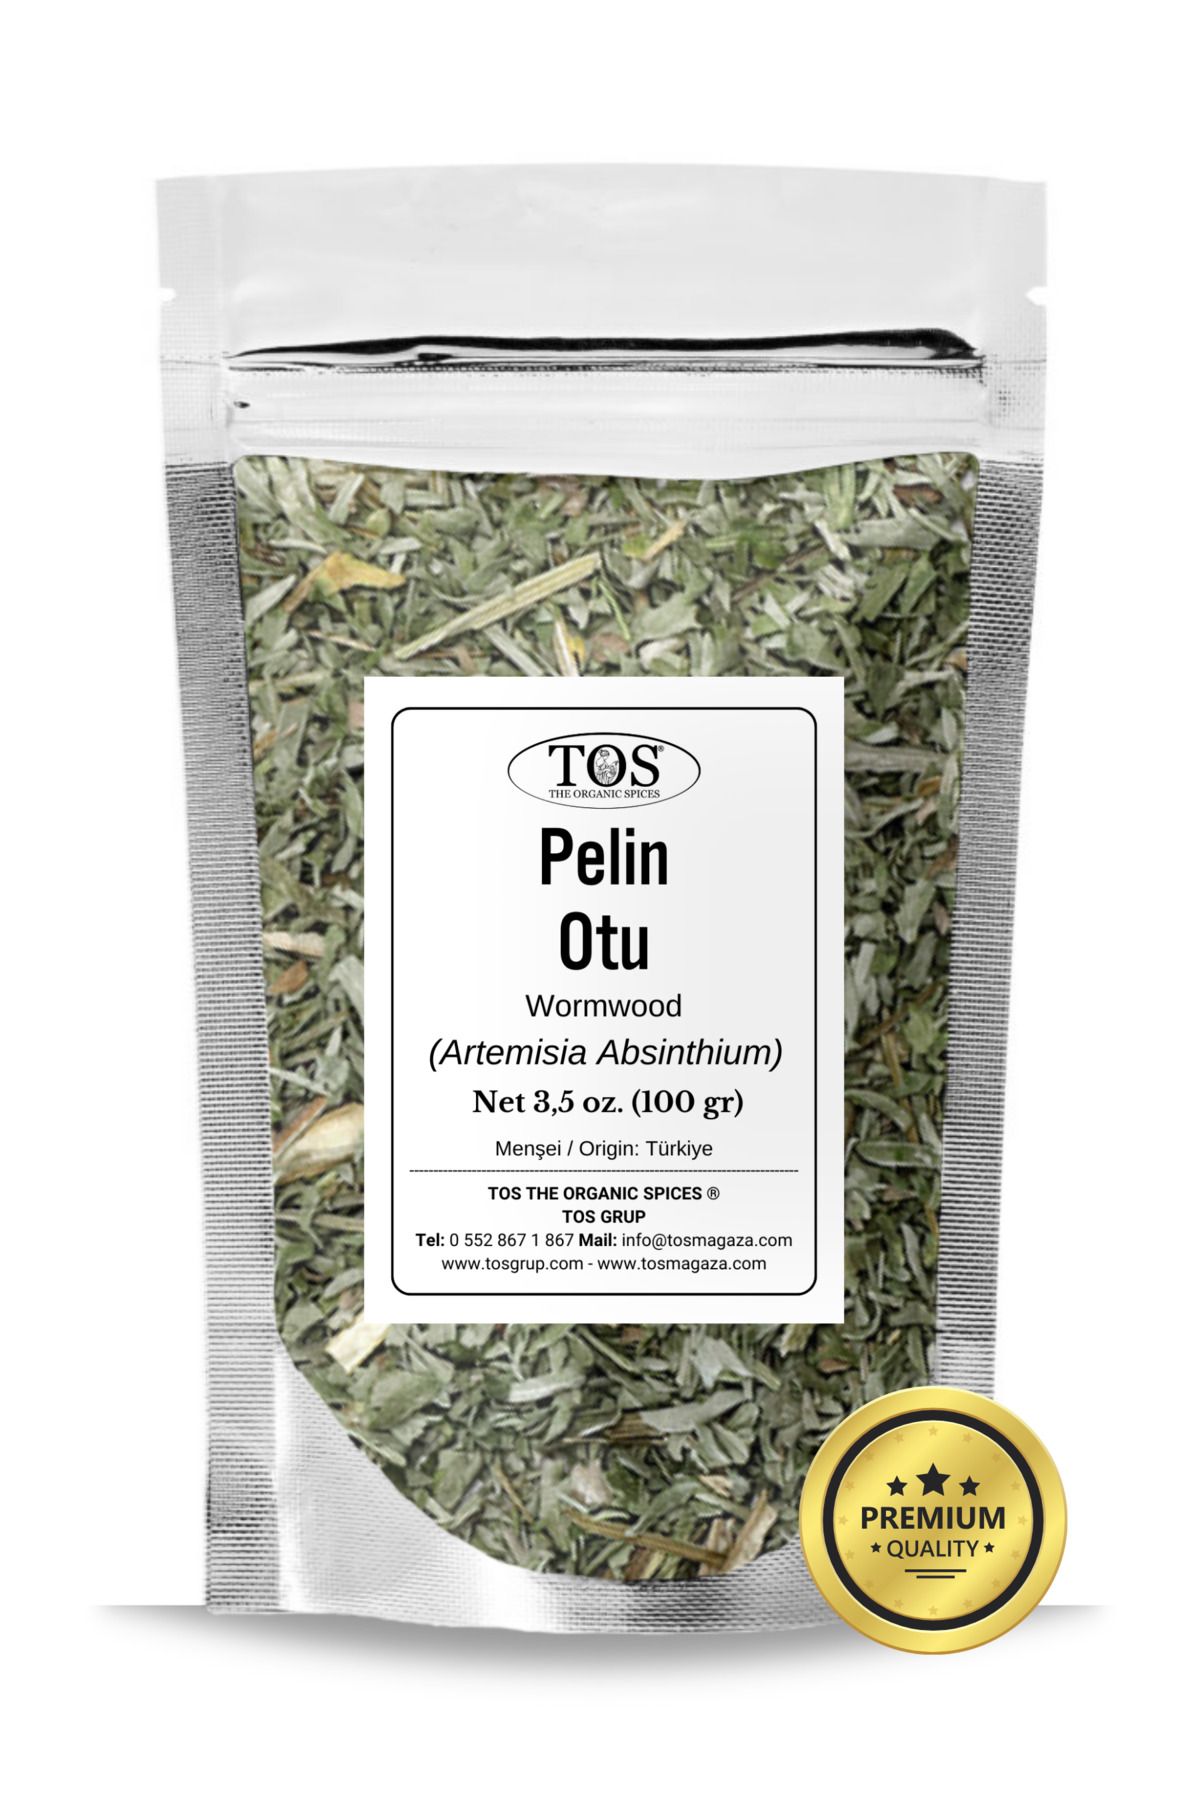 TOS The Organic Spices Pelin Otu 100 gr (1. KALİTE) Artemisia Absinthium